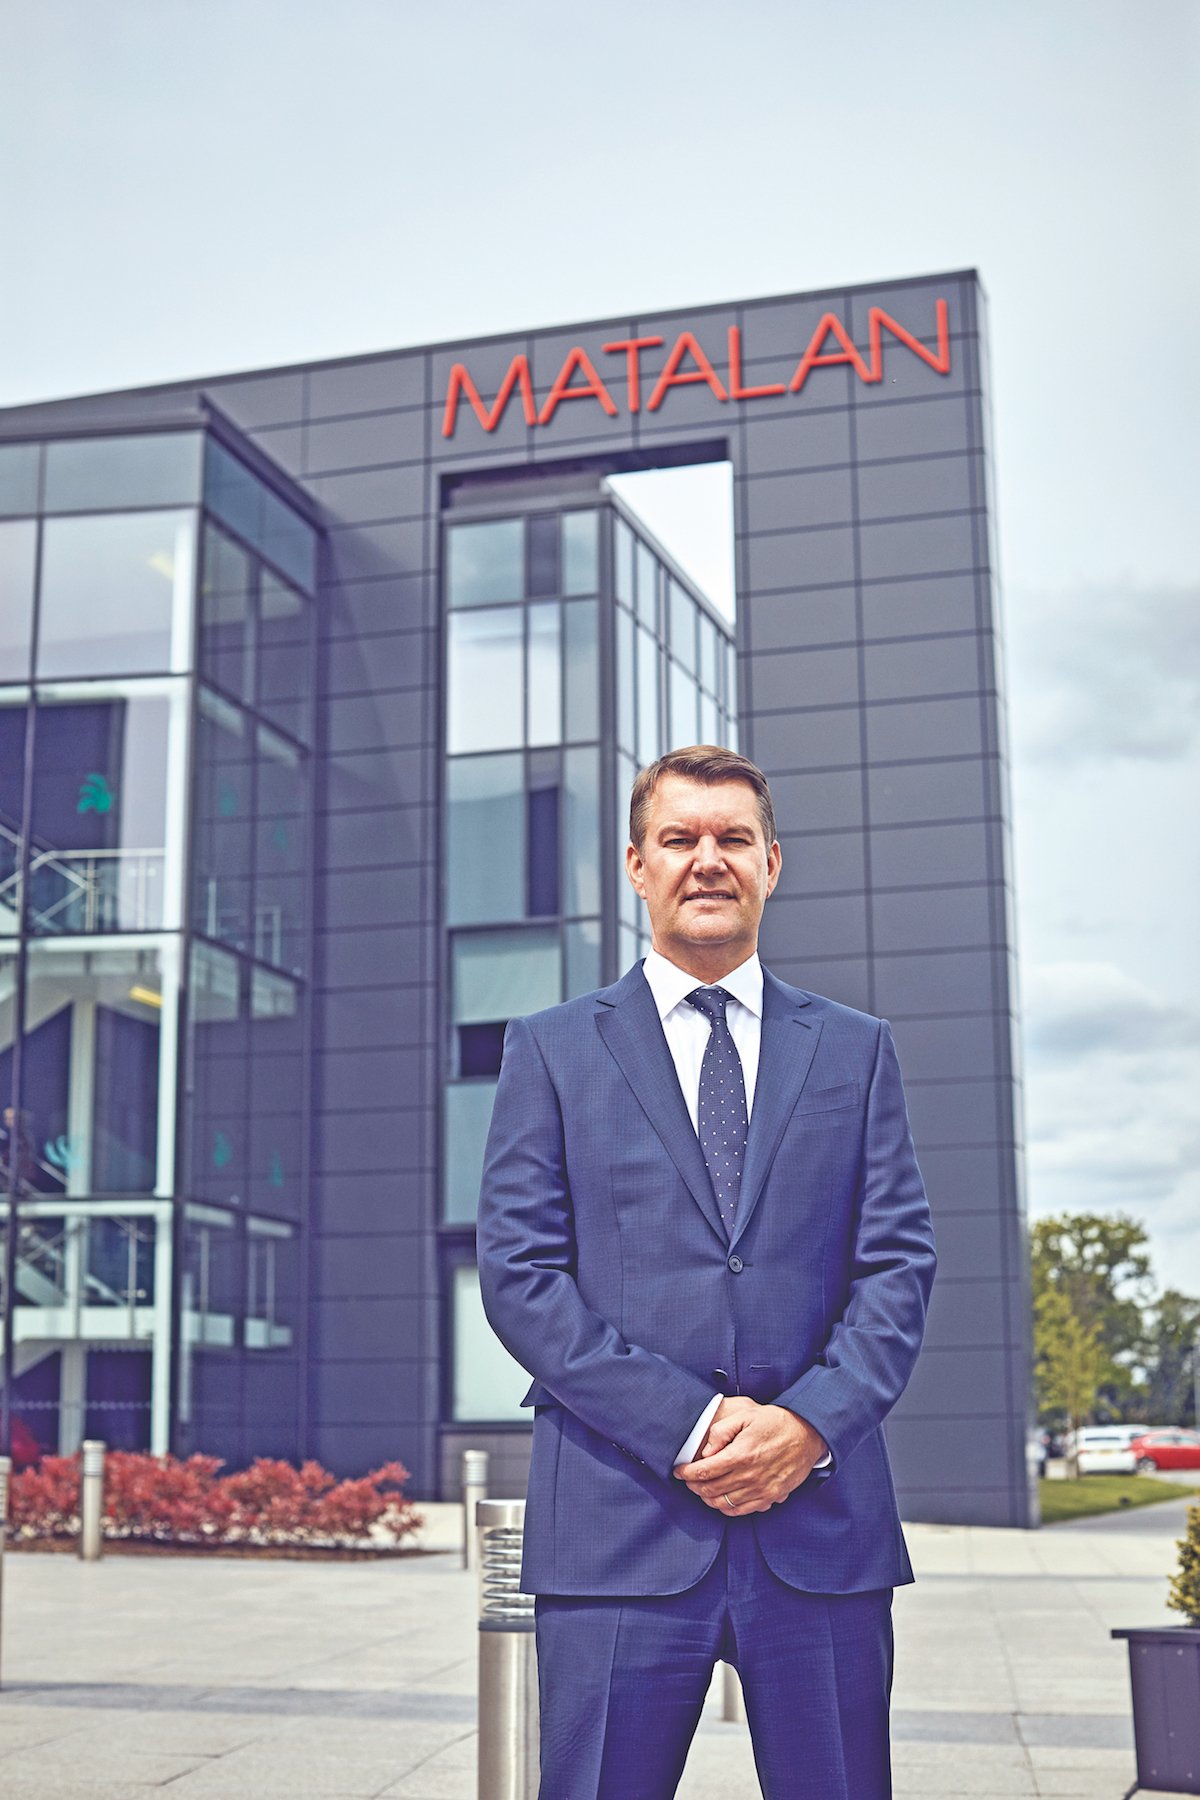 Jason Hargreaves, CEO of Matalan